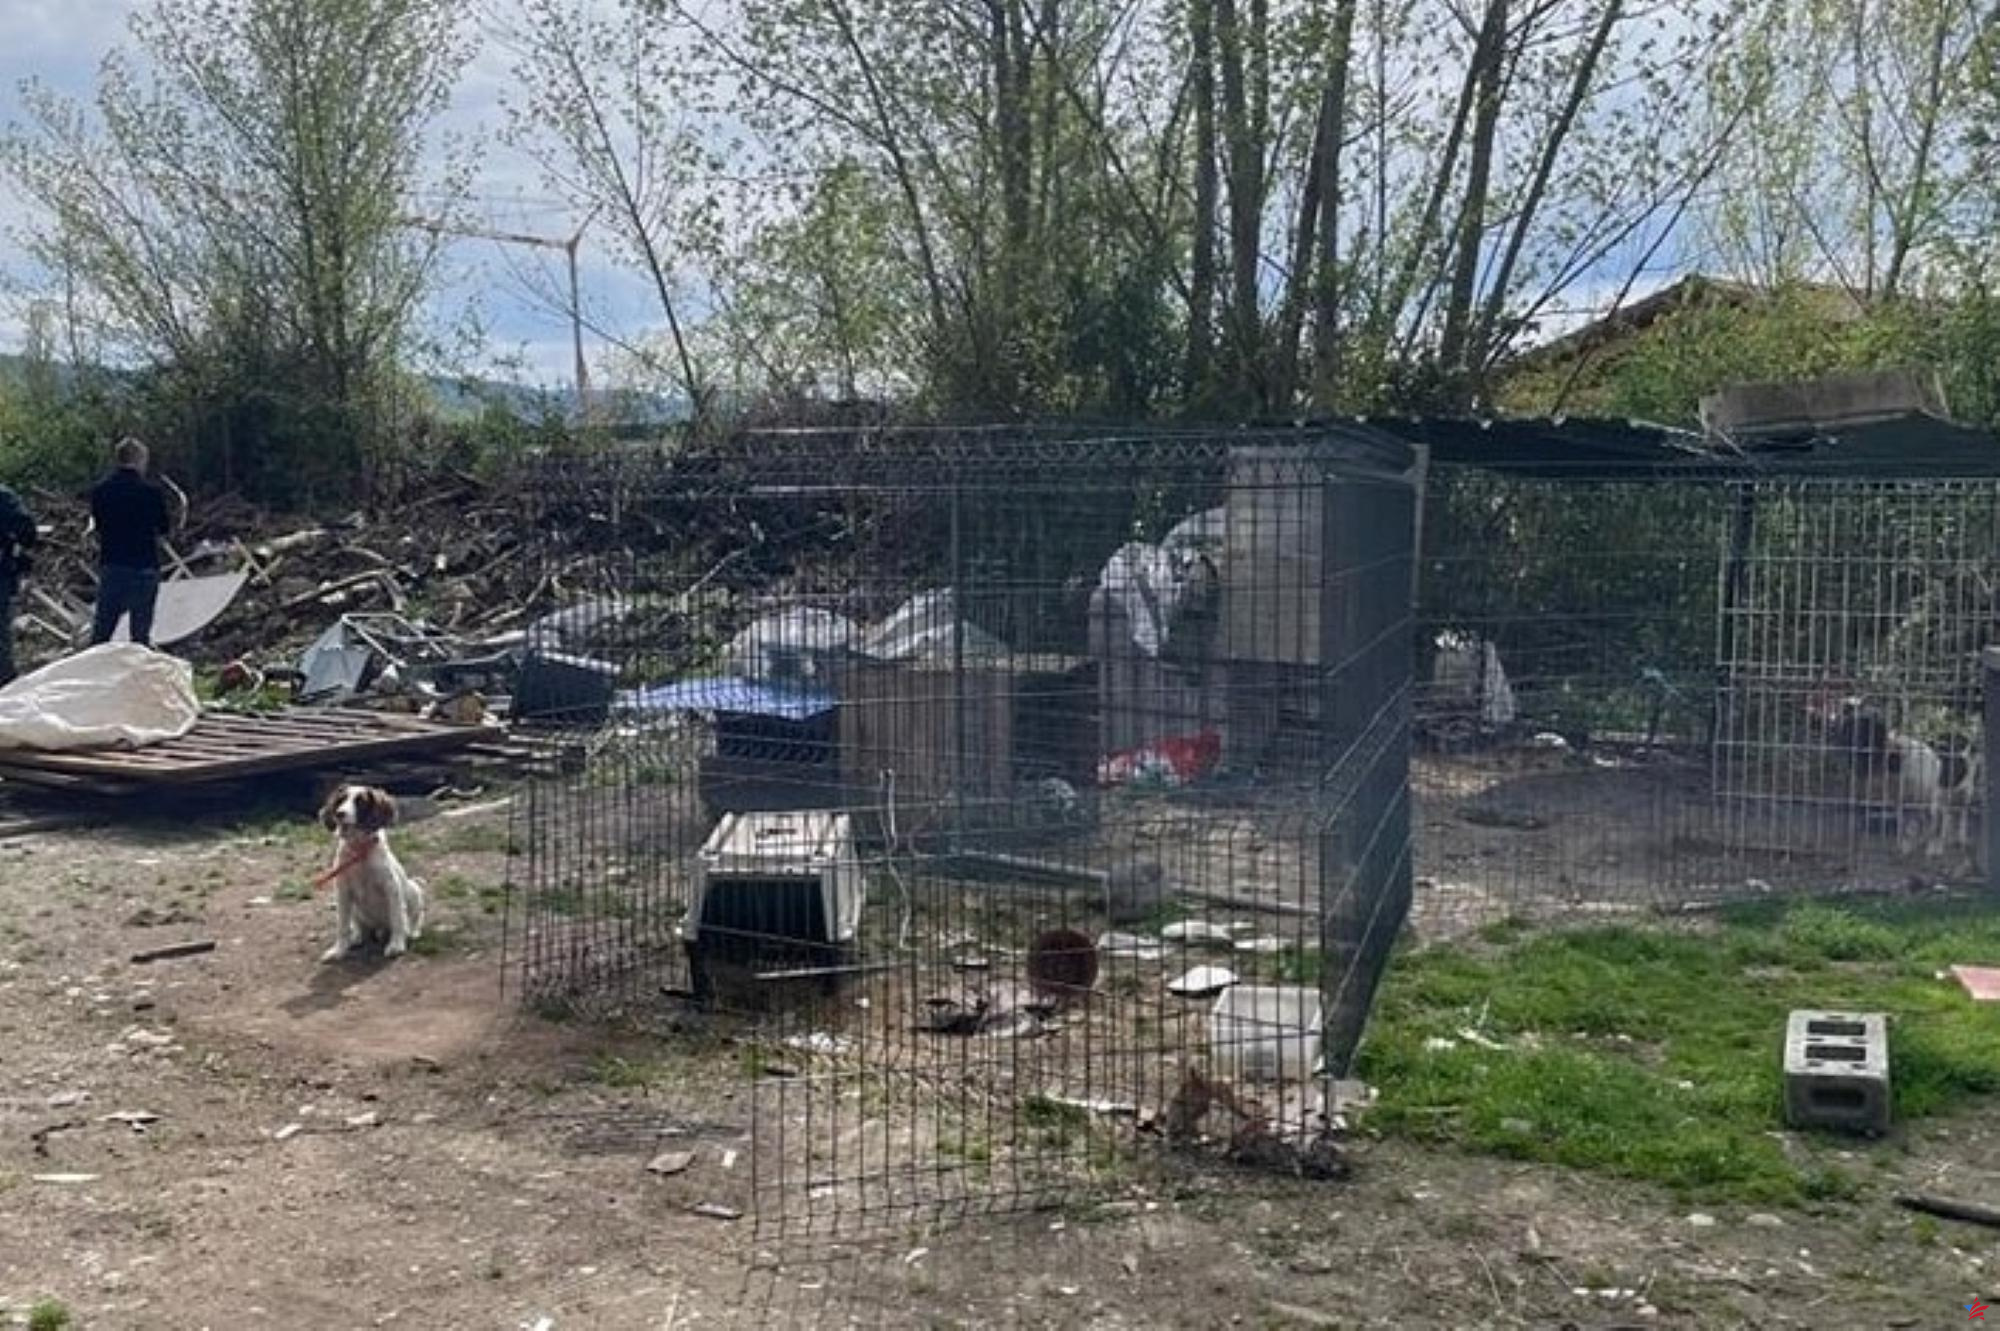 Cerca de Lyon: dieciséis perros maltratados y tres aves protegidas encontrados en terrenos ocupados